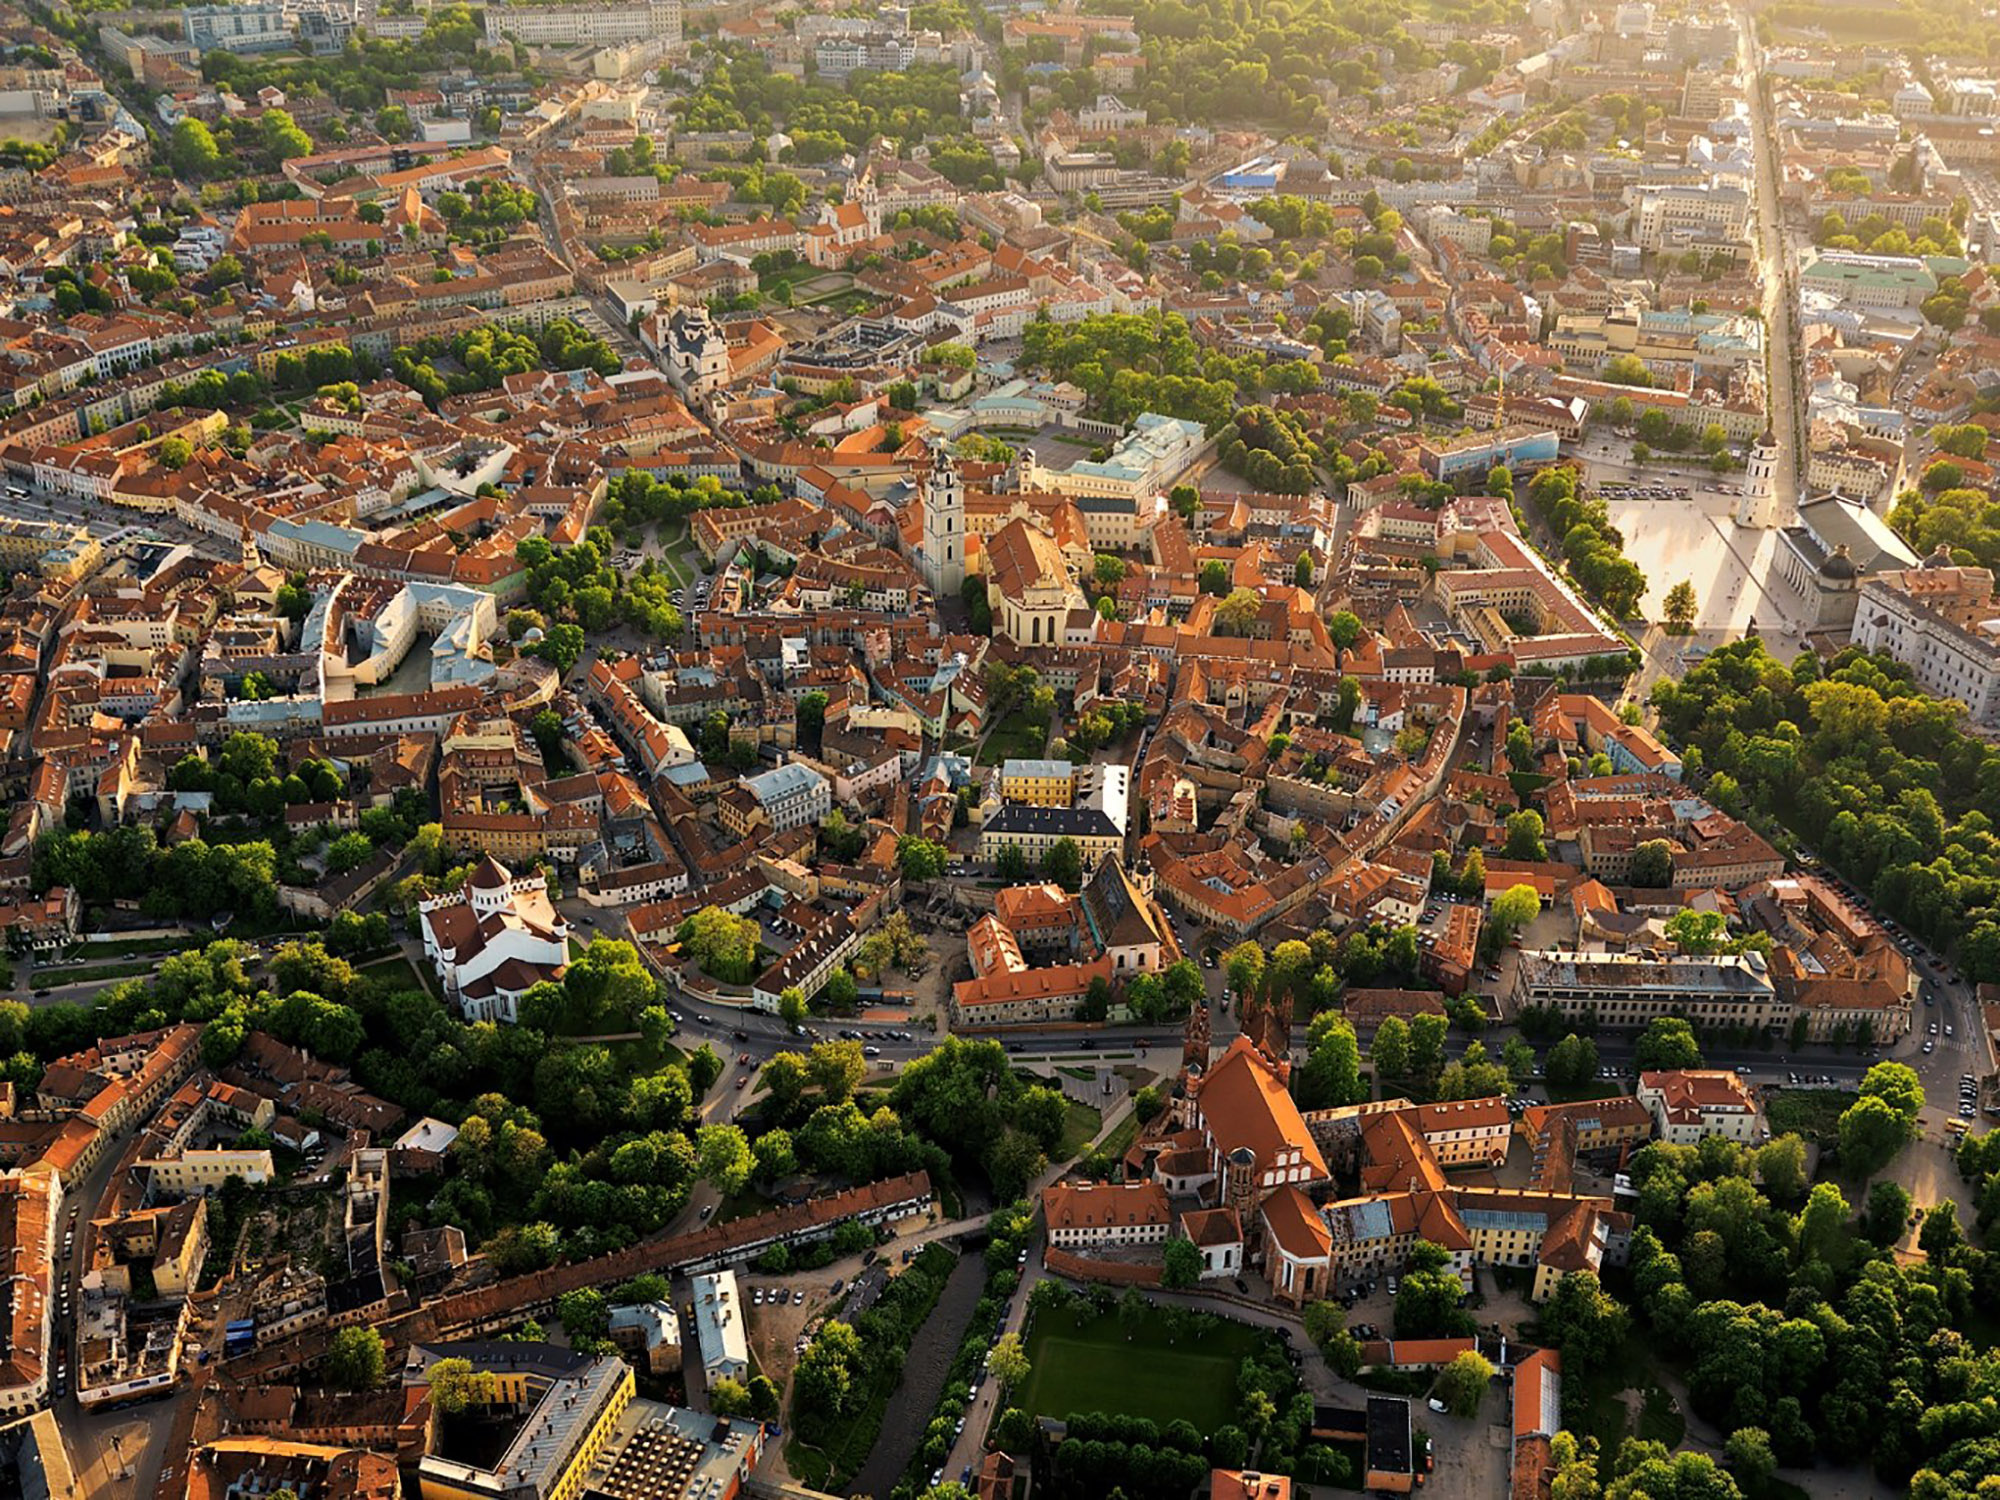 Vilnius beauty, Green landscapes, Picturesque charm, European heritage, 2000x1500 HD Desktop